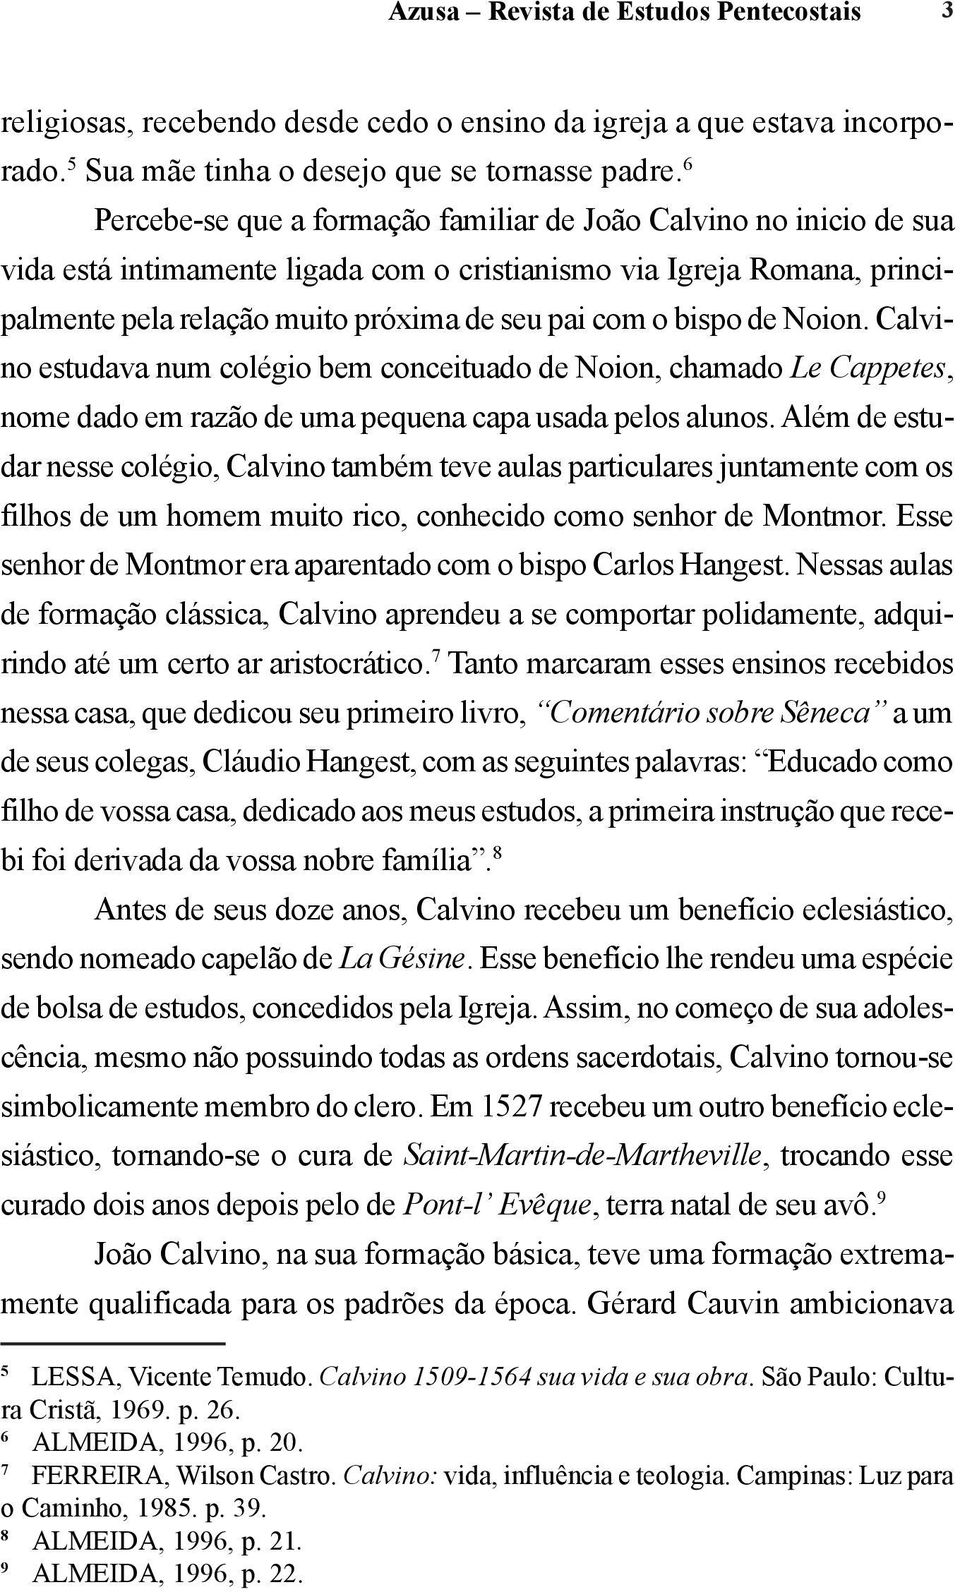 bispo de Noion. Calvino estudava num colégio bem conceituado de Noion, chamado Le Cappetes, nome dado em razão de uma pequena capa usada pelos alunos.